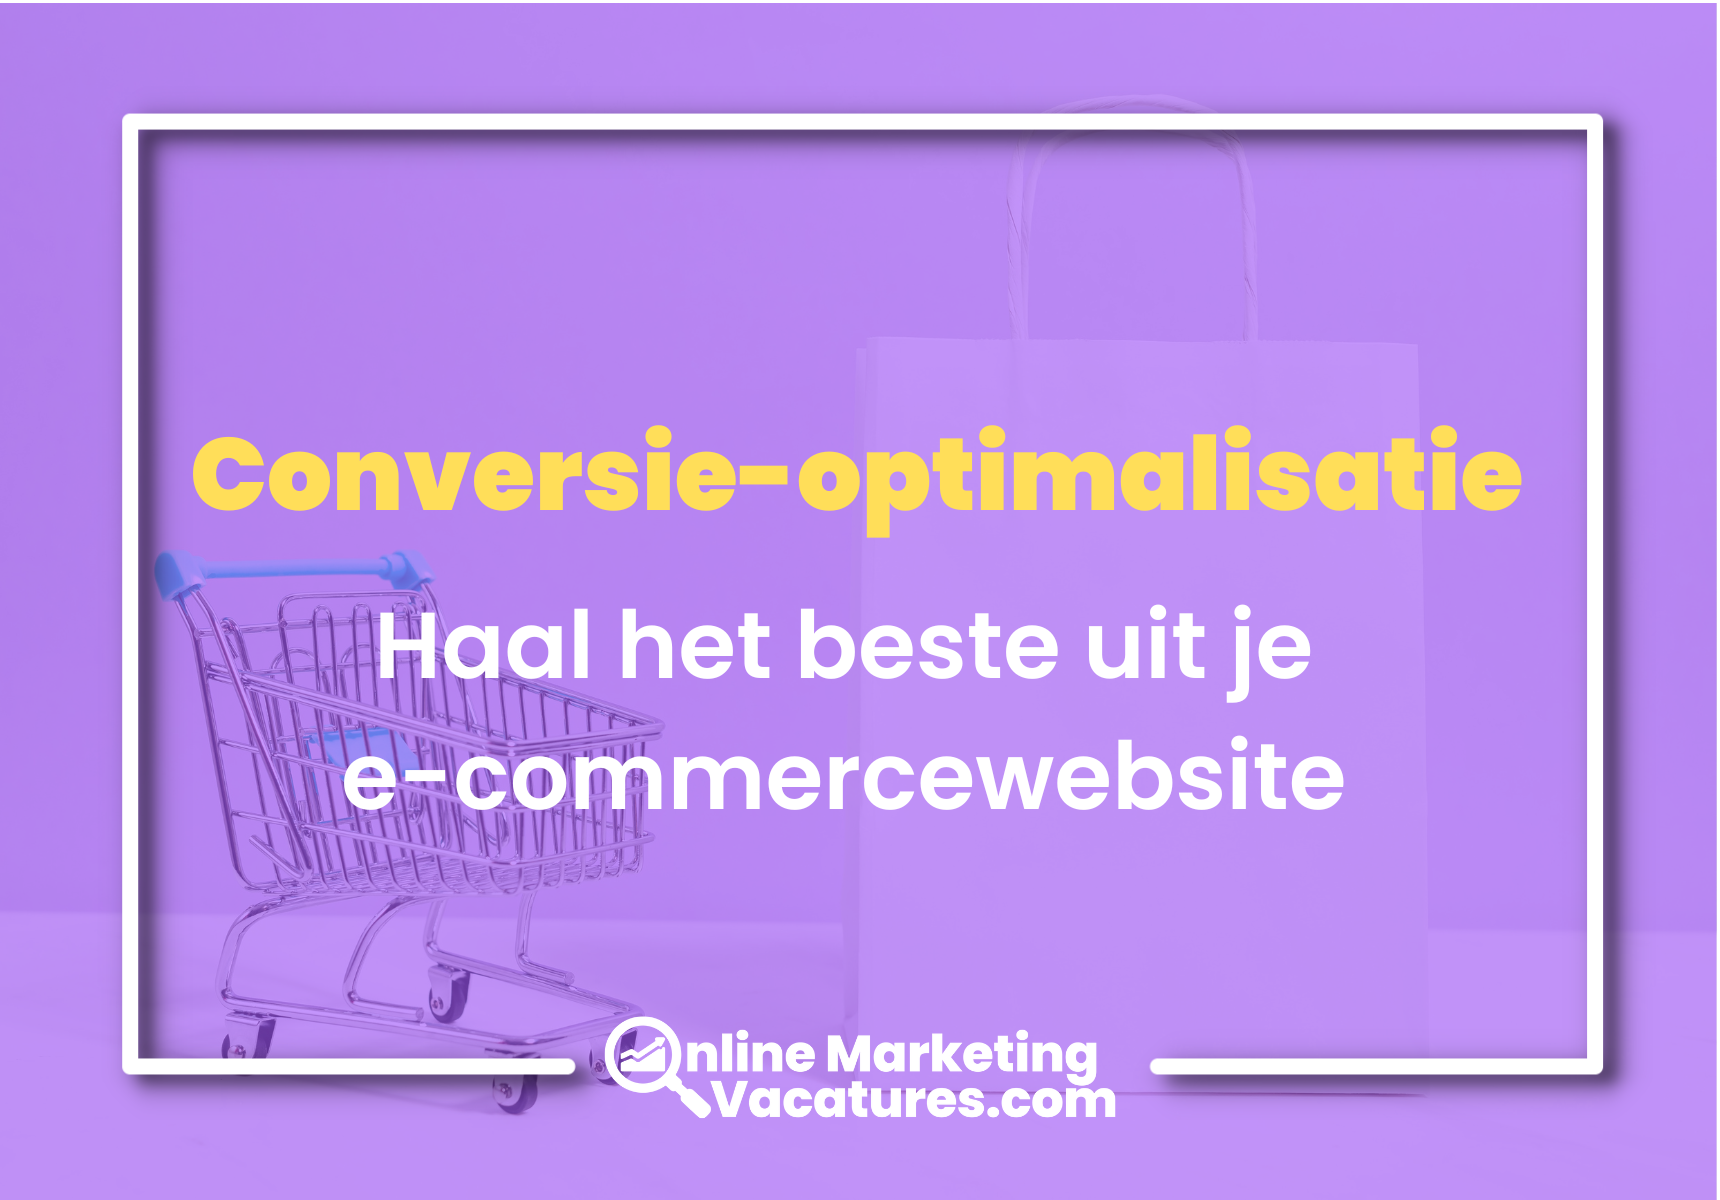 Conversie-optimalisatie: Haal het beste uit je e-commercewebsite